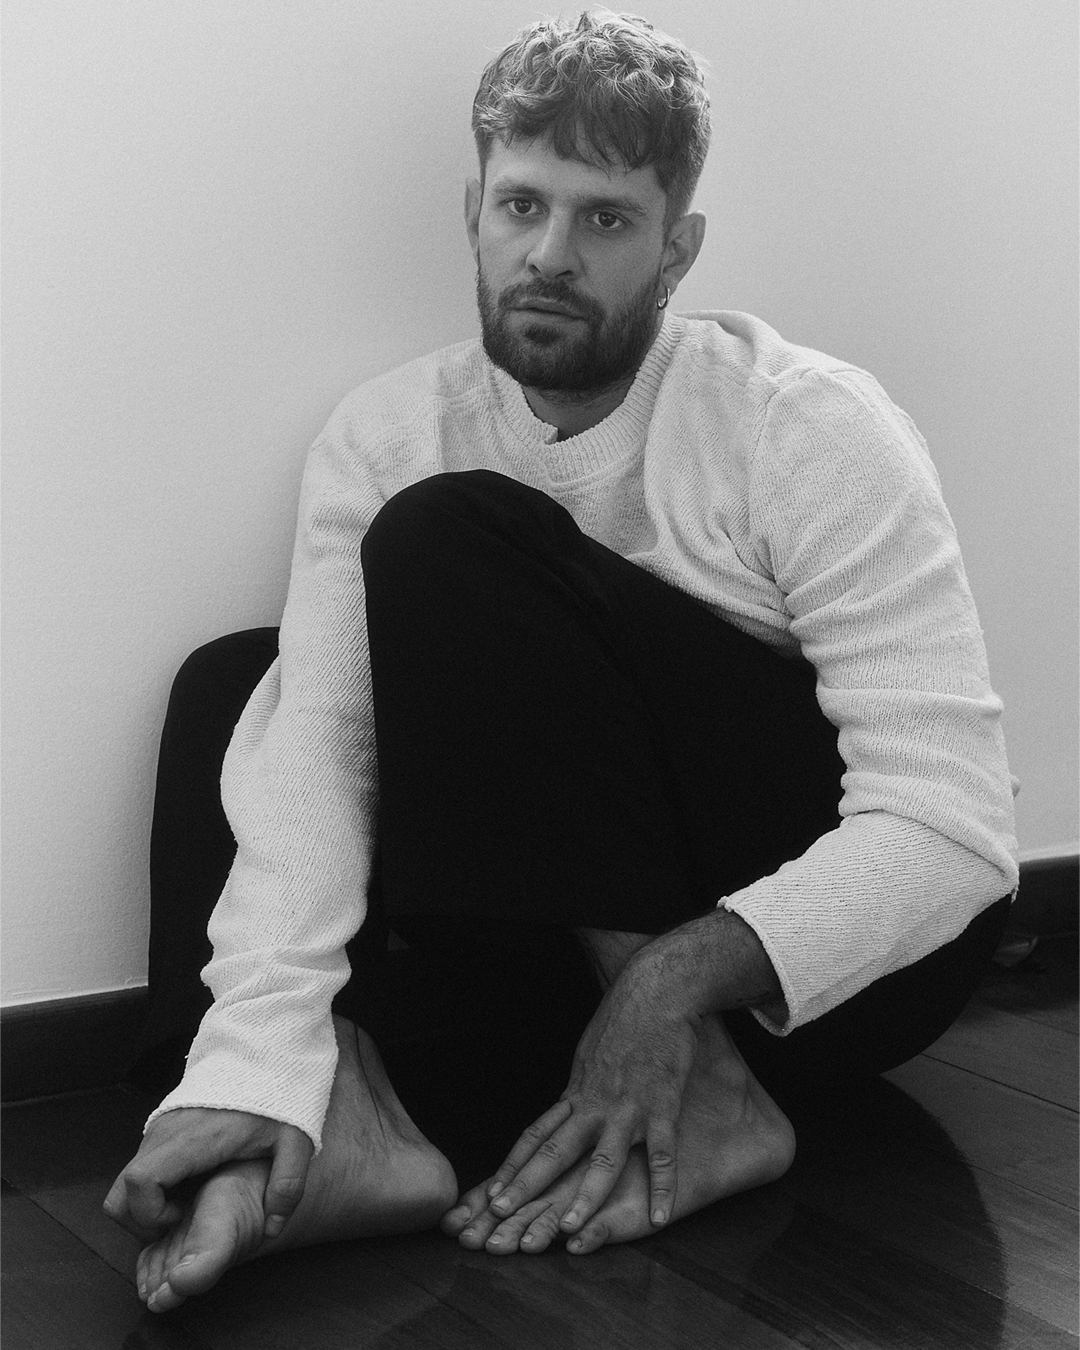 Ator Alejandro Claveaux sentado no chão, de calça preta e camisa branca.